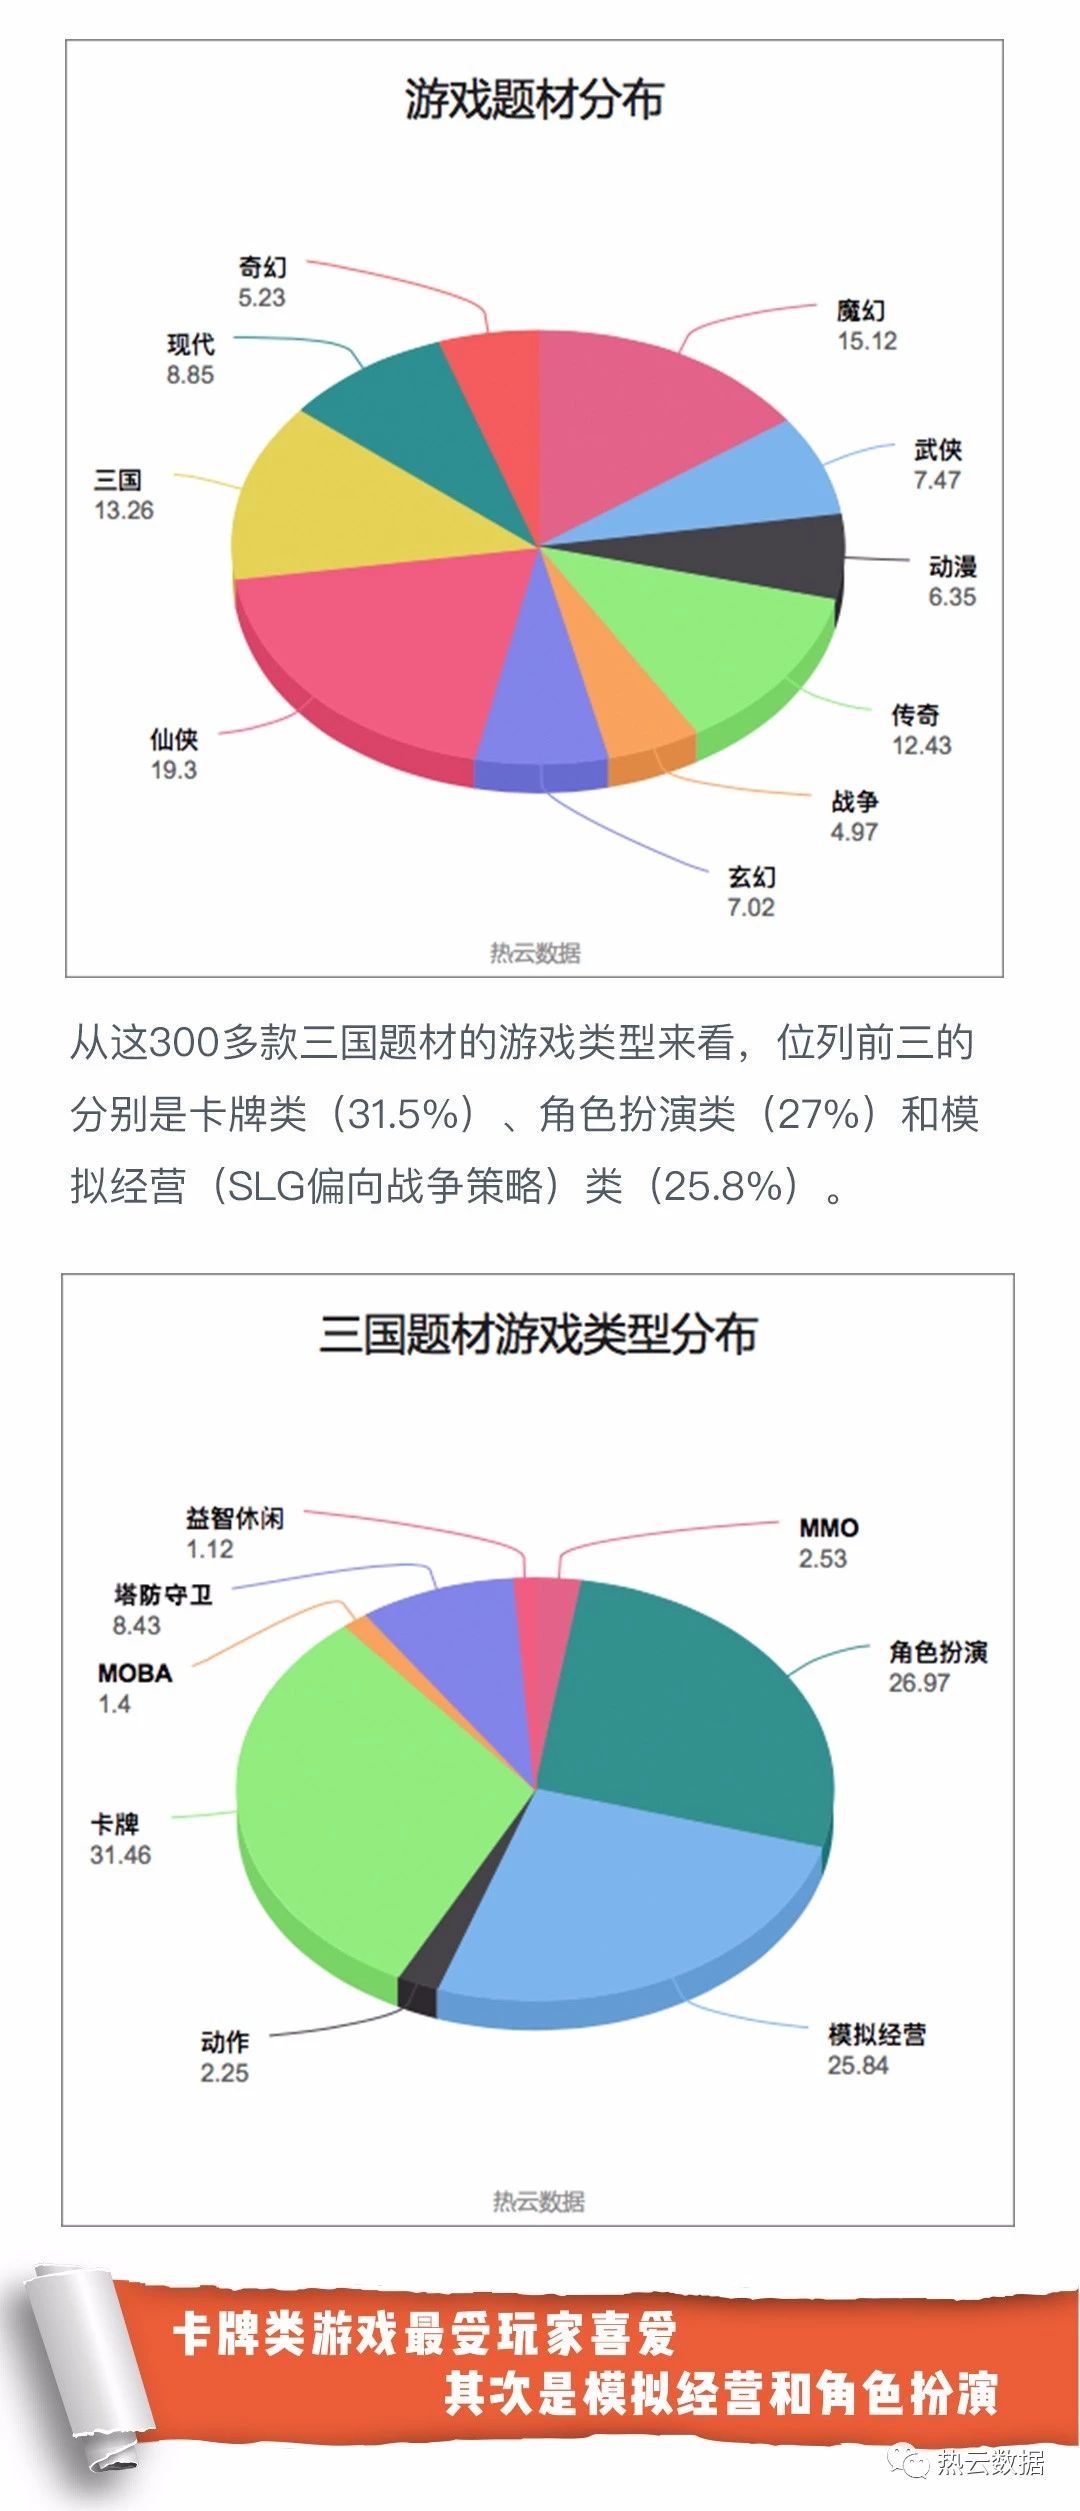 5-9月三国游戏广告投放洞察：卡牌类占31.5％ 吕布貂蝉最受欢迎